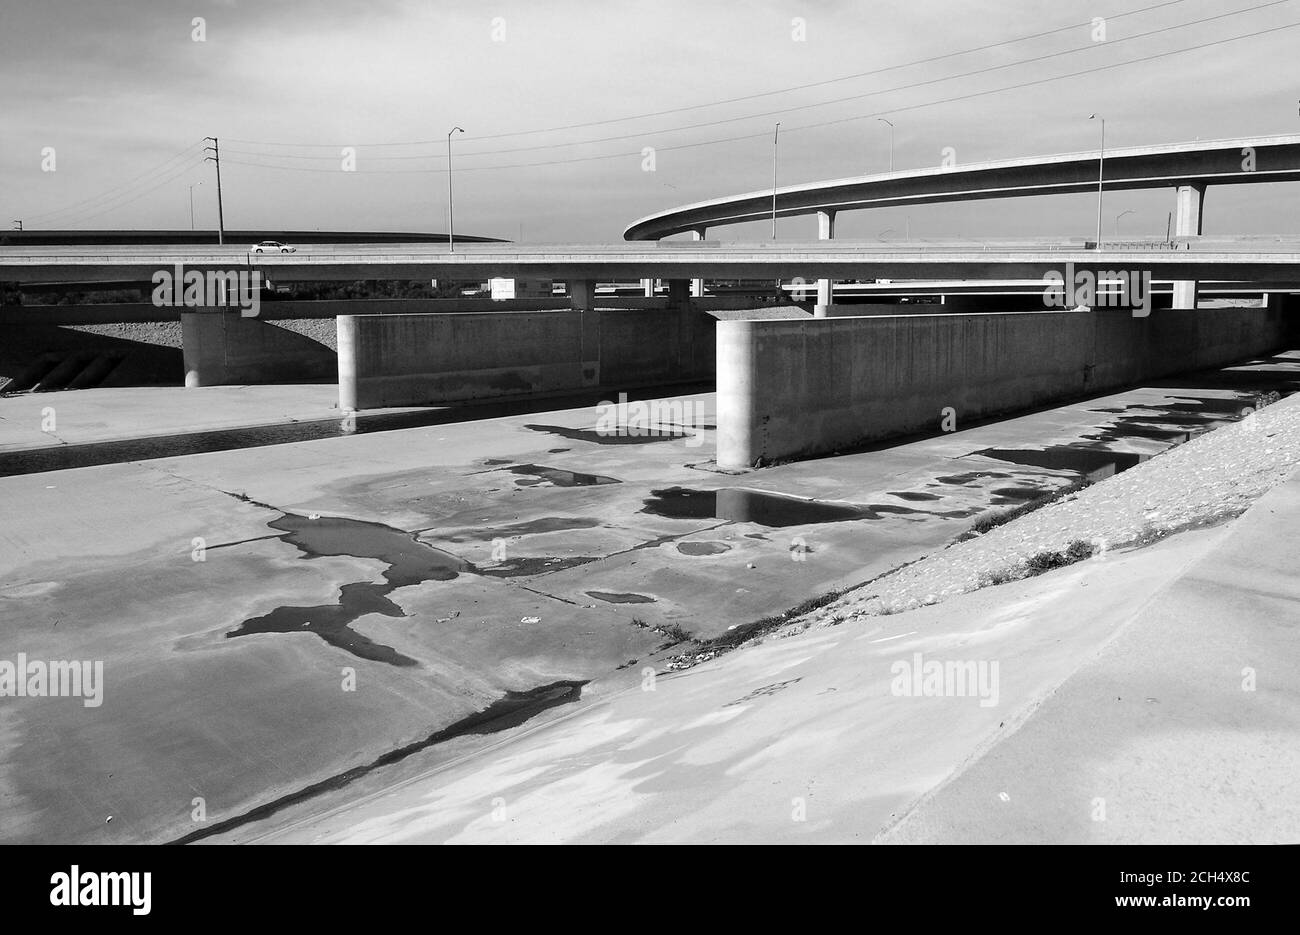 Vista archivistica in bianco e nero sul fiume Los Angeles, fiancheggiato da cemento, vicino alla superstrada 105 nella California meridionale. Foto Stock